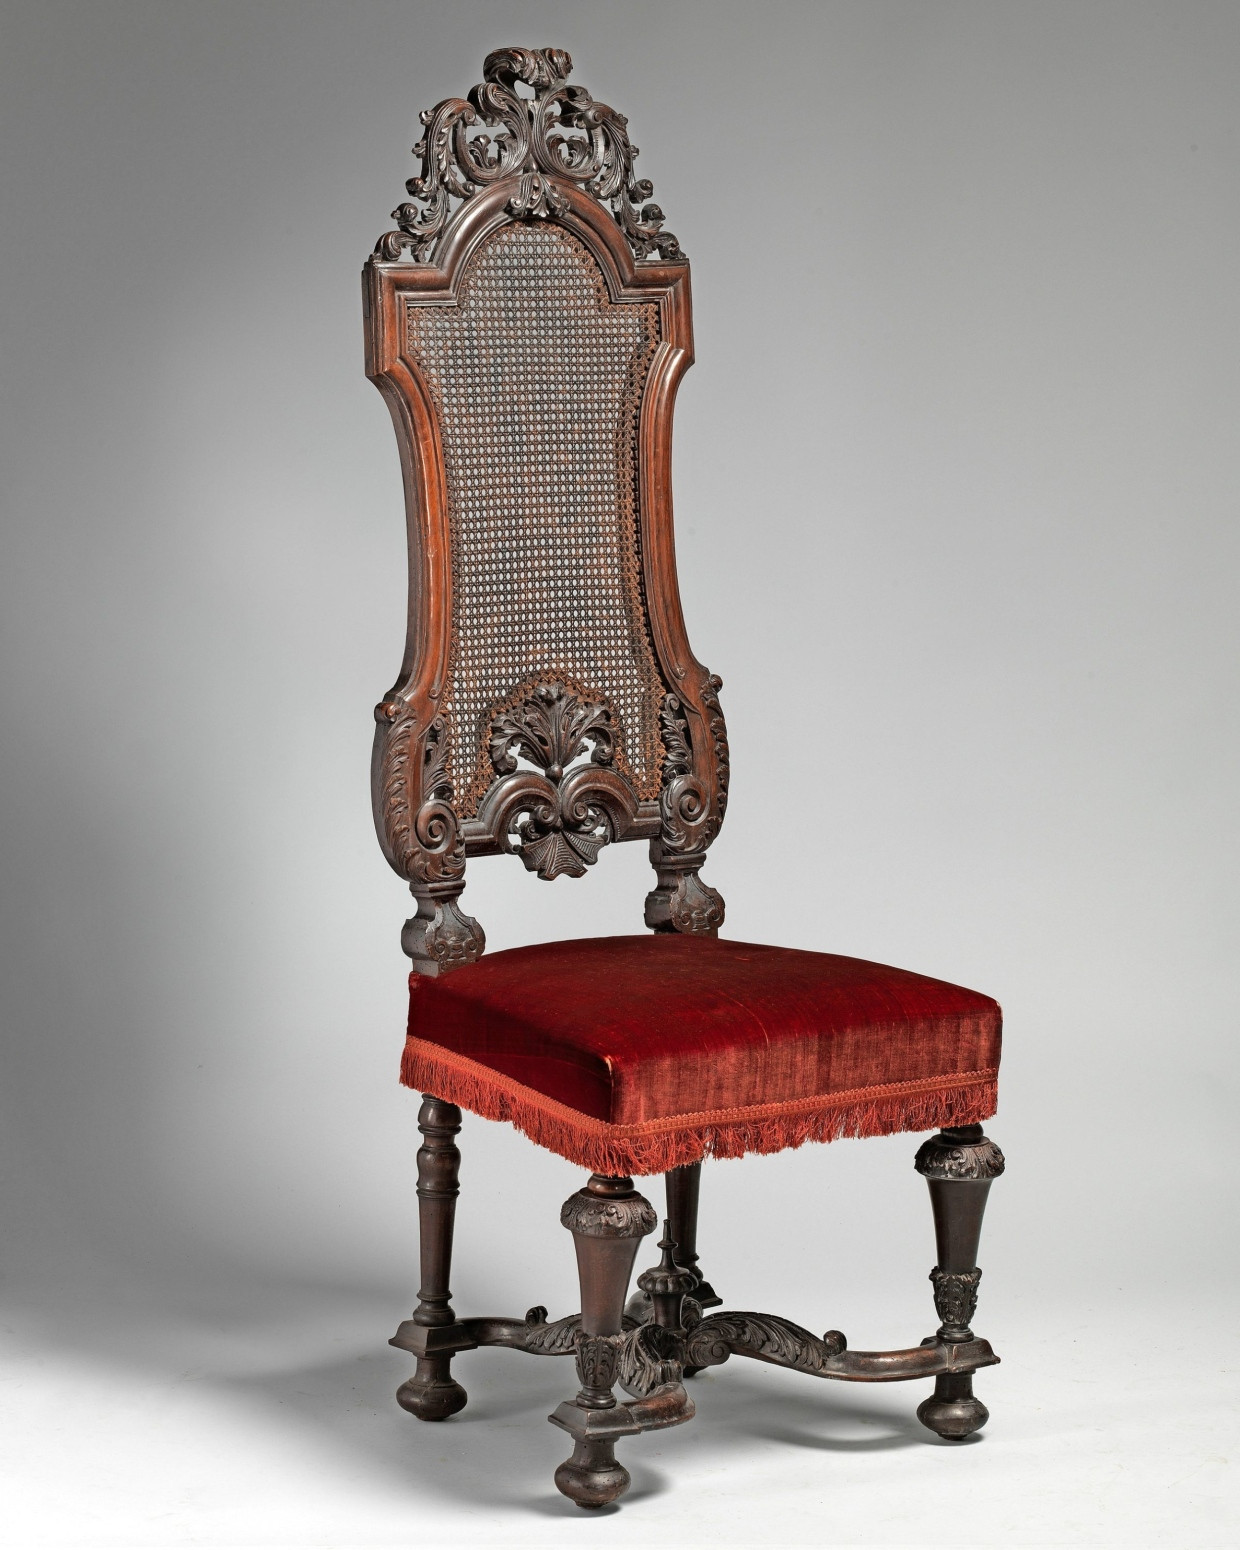 Die Serie der Stühle in der Sammlung des Metropolitan Museum of Art umfasst sechs Exemplare.